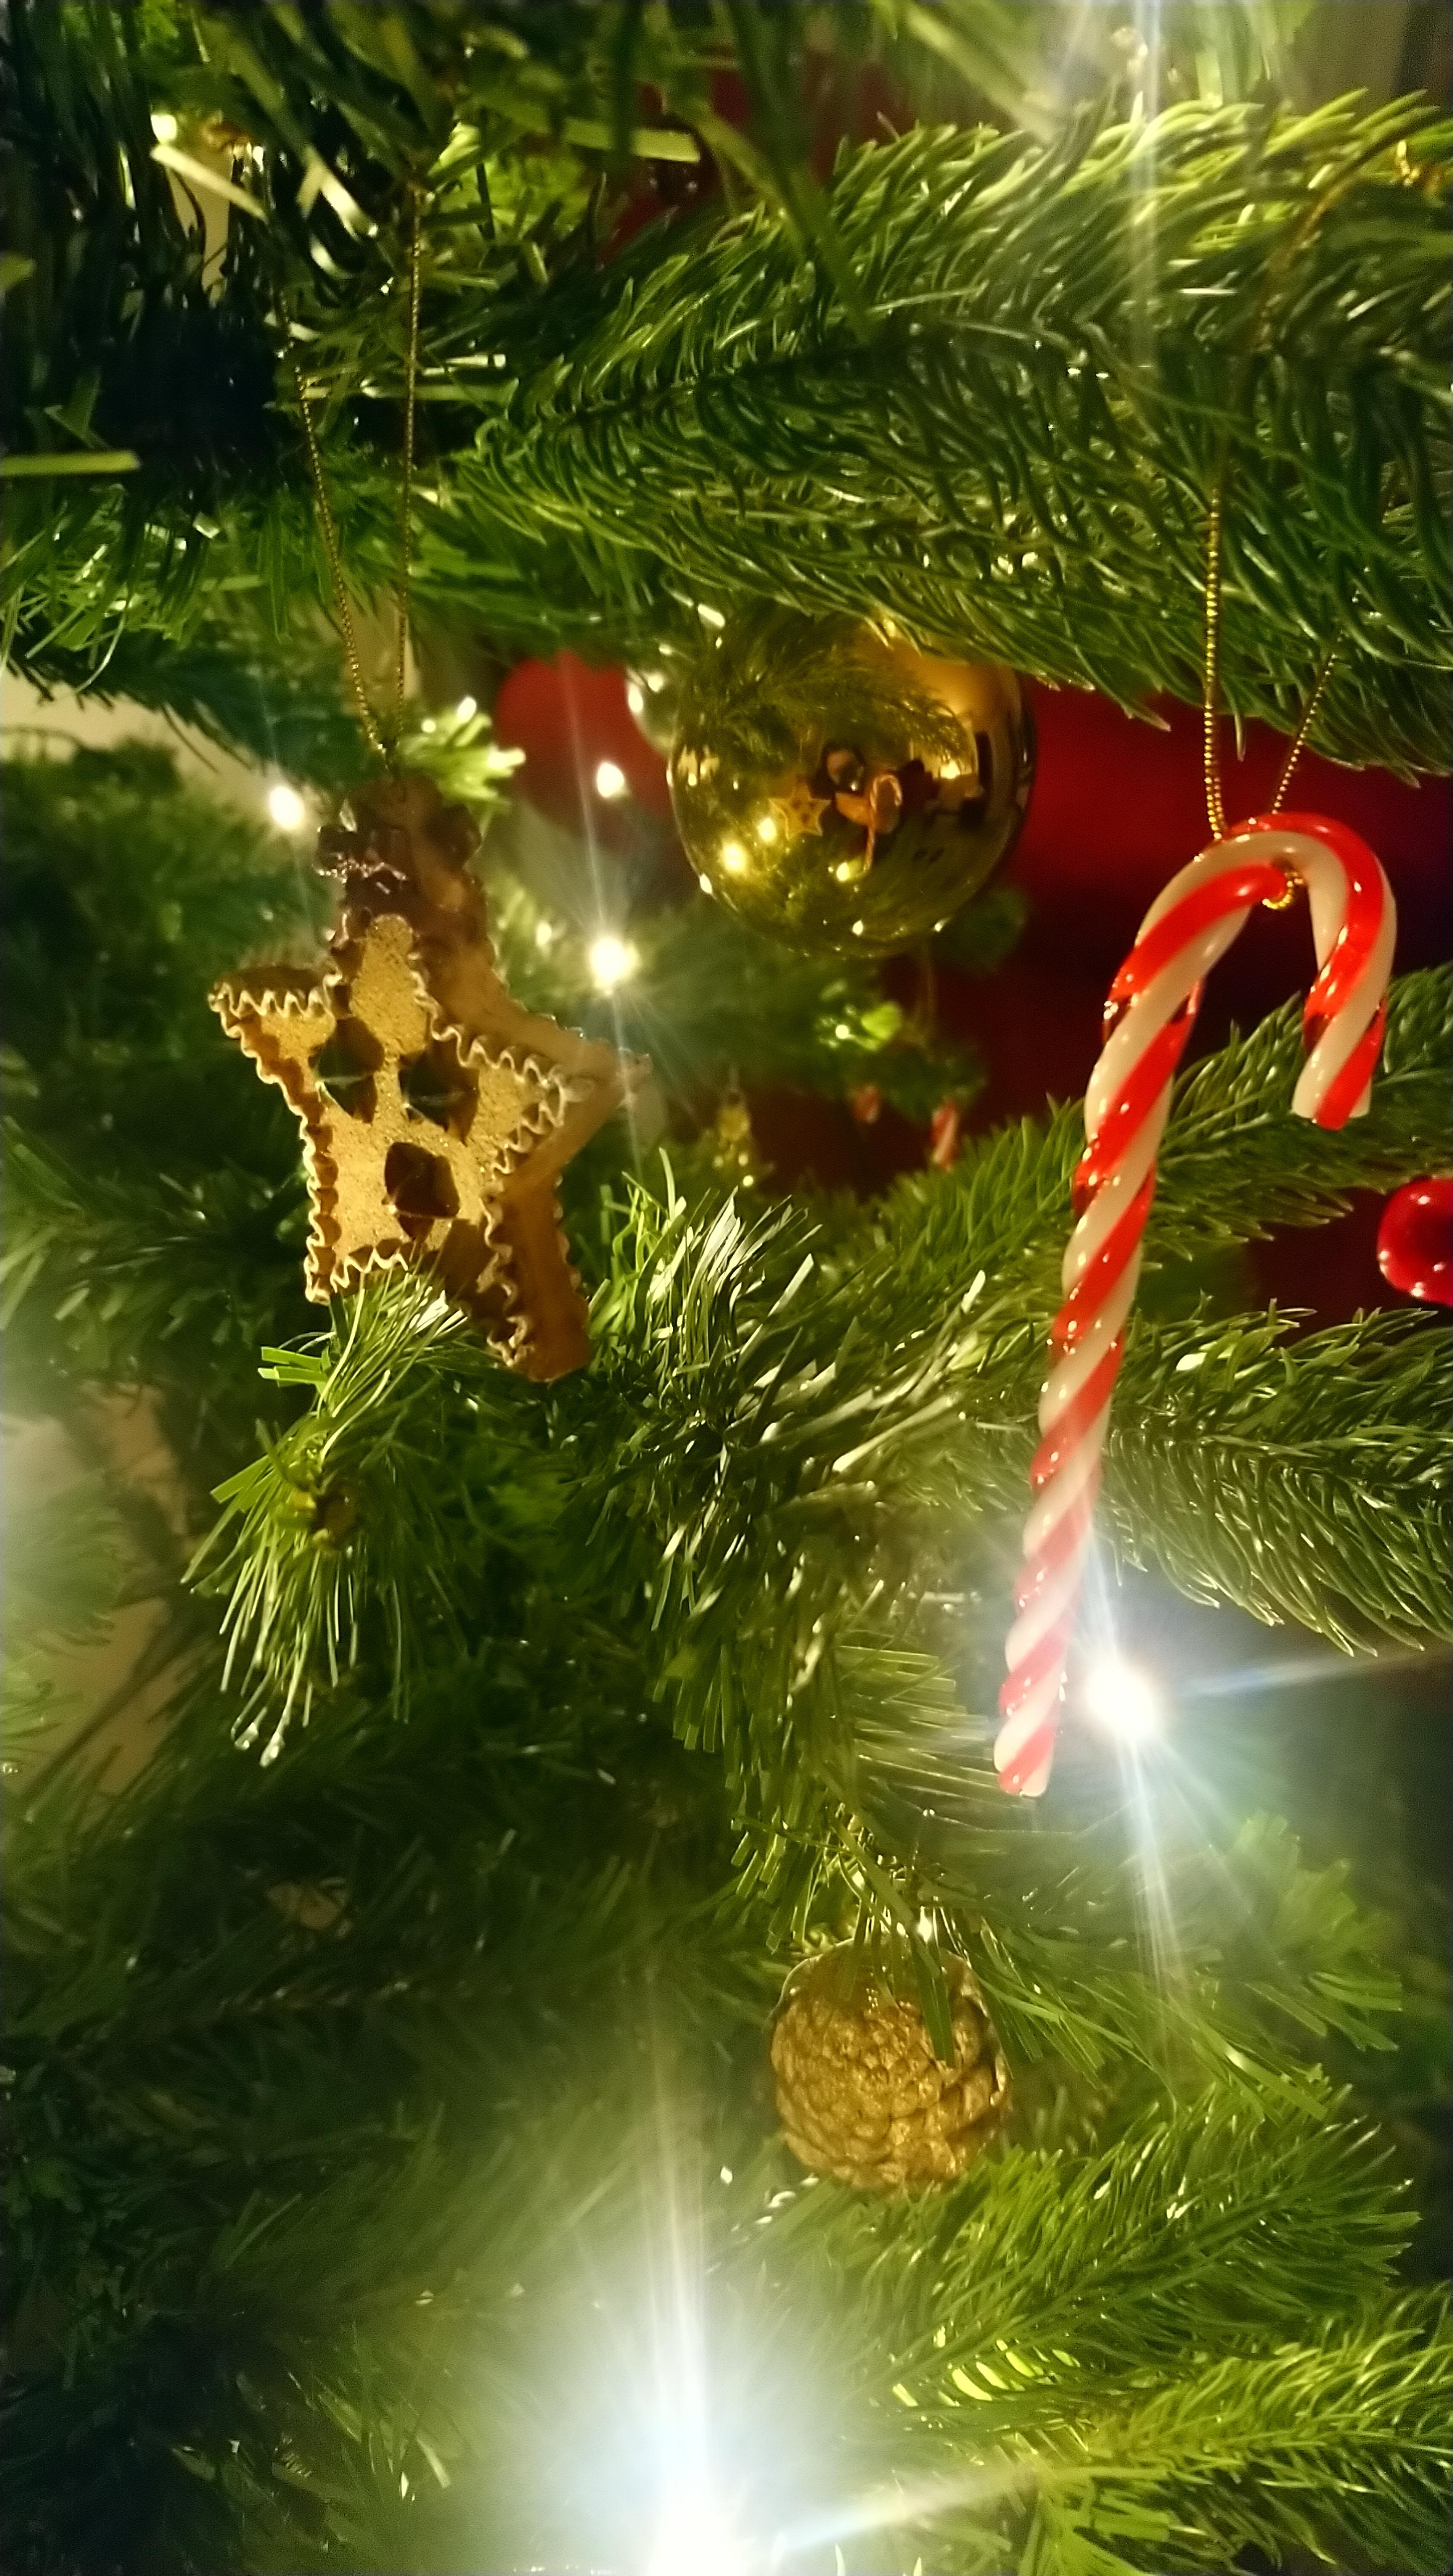 Ich liebe Weihnachten. Dieses Jahr eben noch besinnlicher ☺️ ♥ #weihnachtsbaum #weihnachten #weihnachtsdeko #winter 